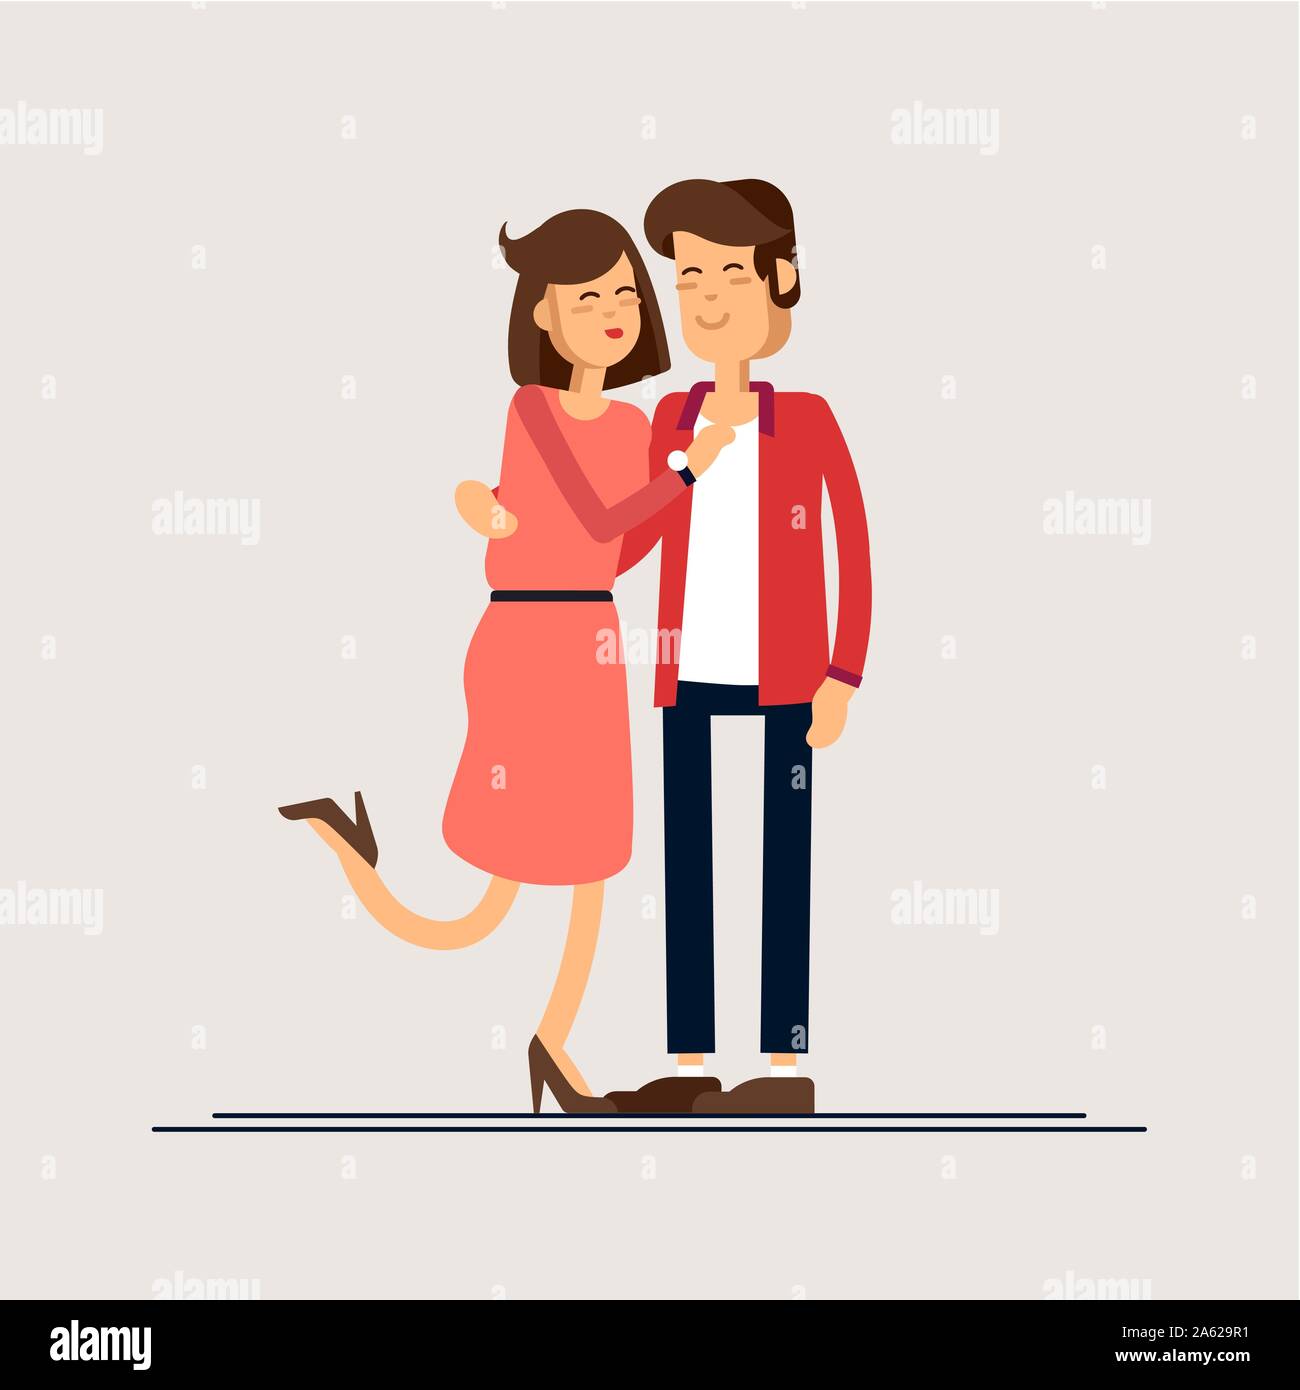 Verliebte Paare. Mann und Frau umarmen sich liebevoll. Charaktere für das Fest des heiligen Valentins. Vektorgrafik im Cartoon-Stil. Stock Vektor